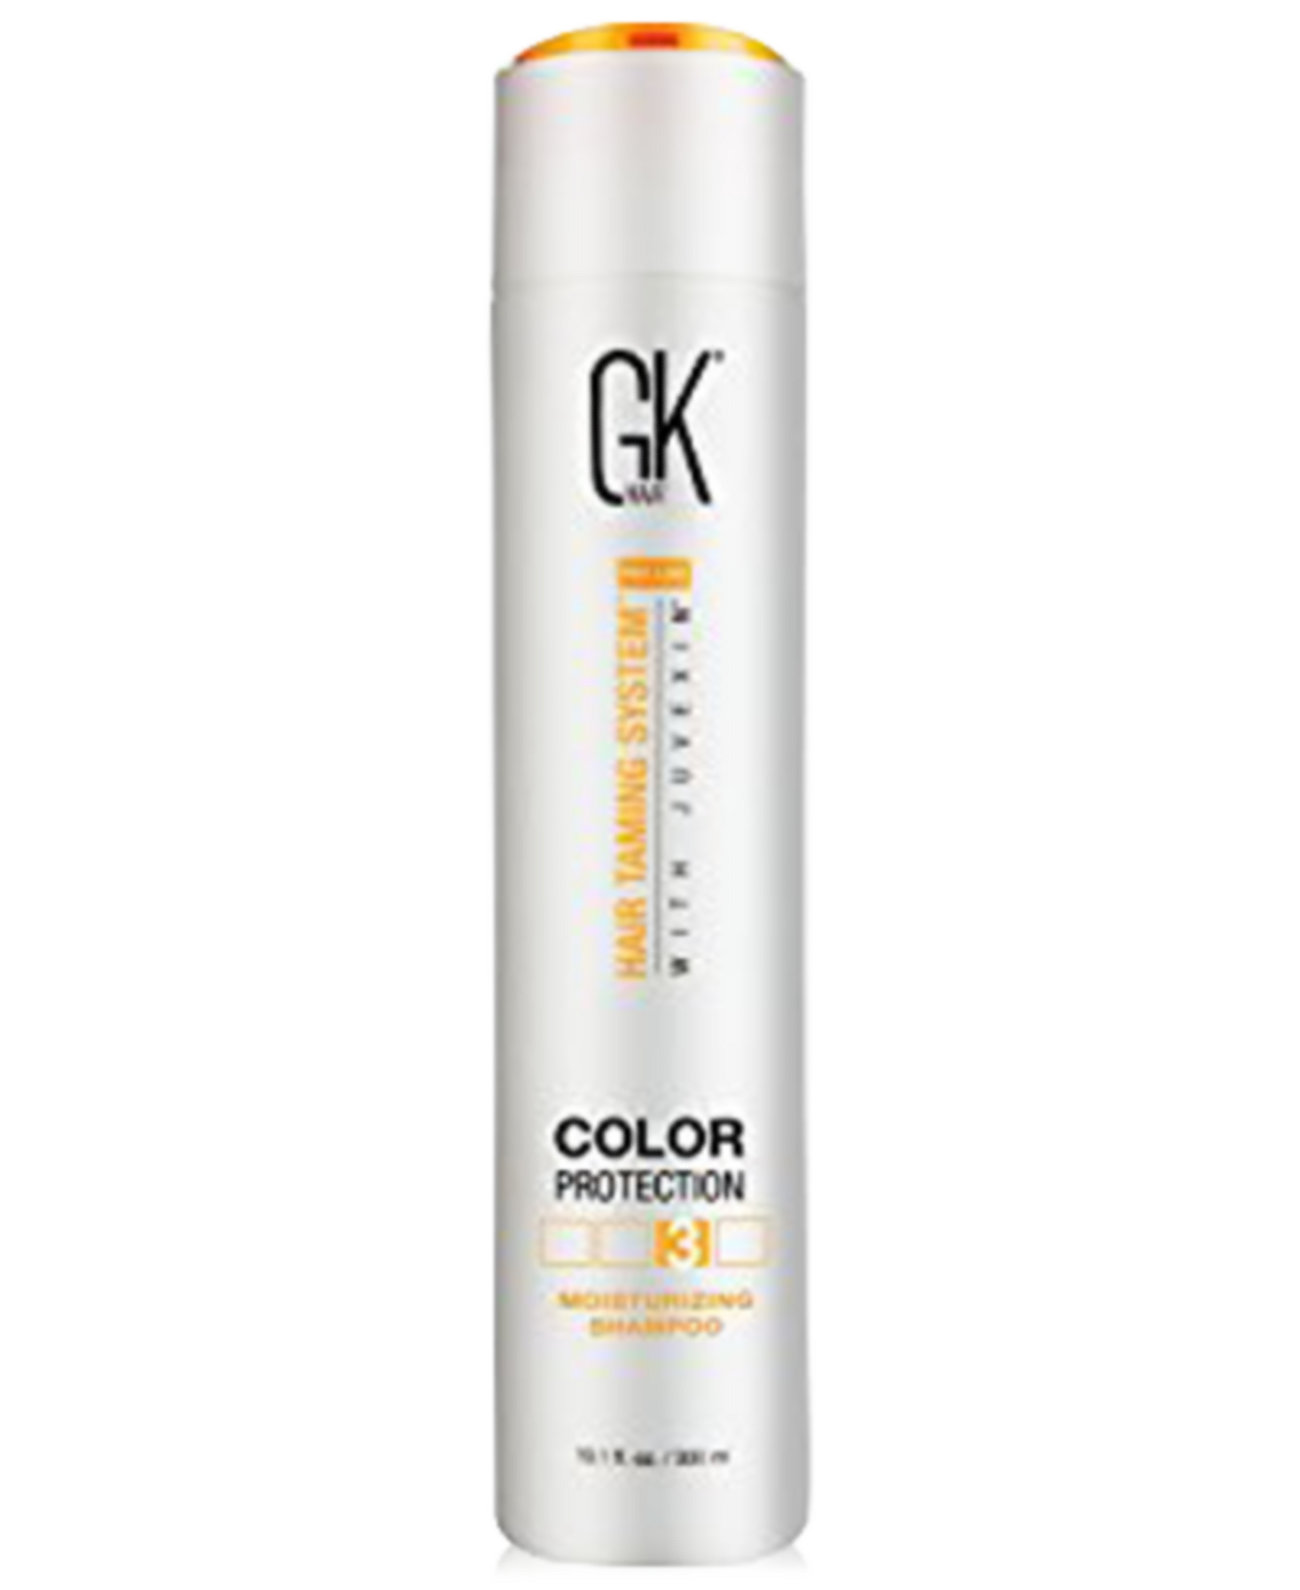 GKHair Color Protection Увлажняющий шампунь, 10,1 унции, от PUREBEAUTY Salon & Spa Global Keratin